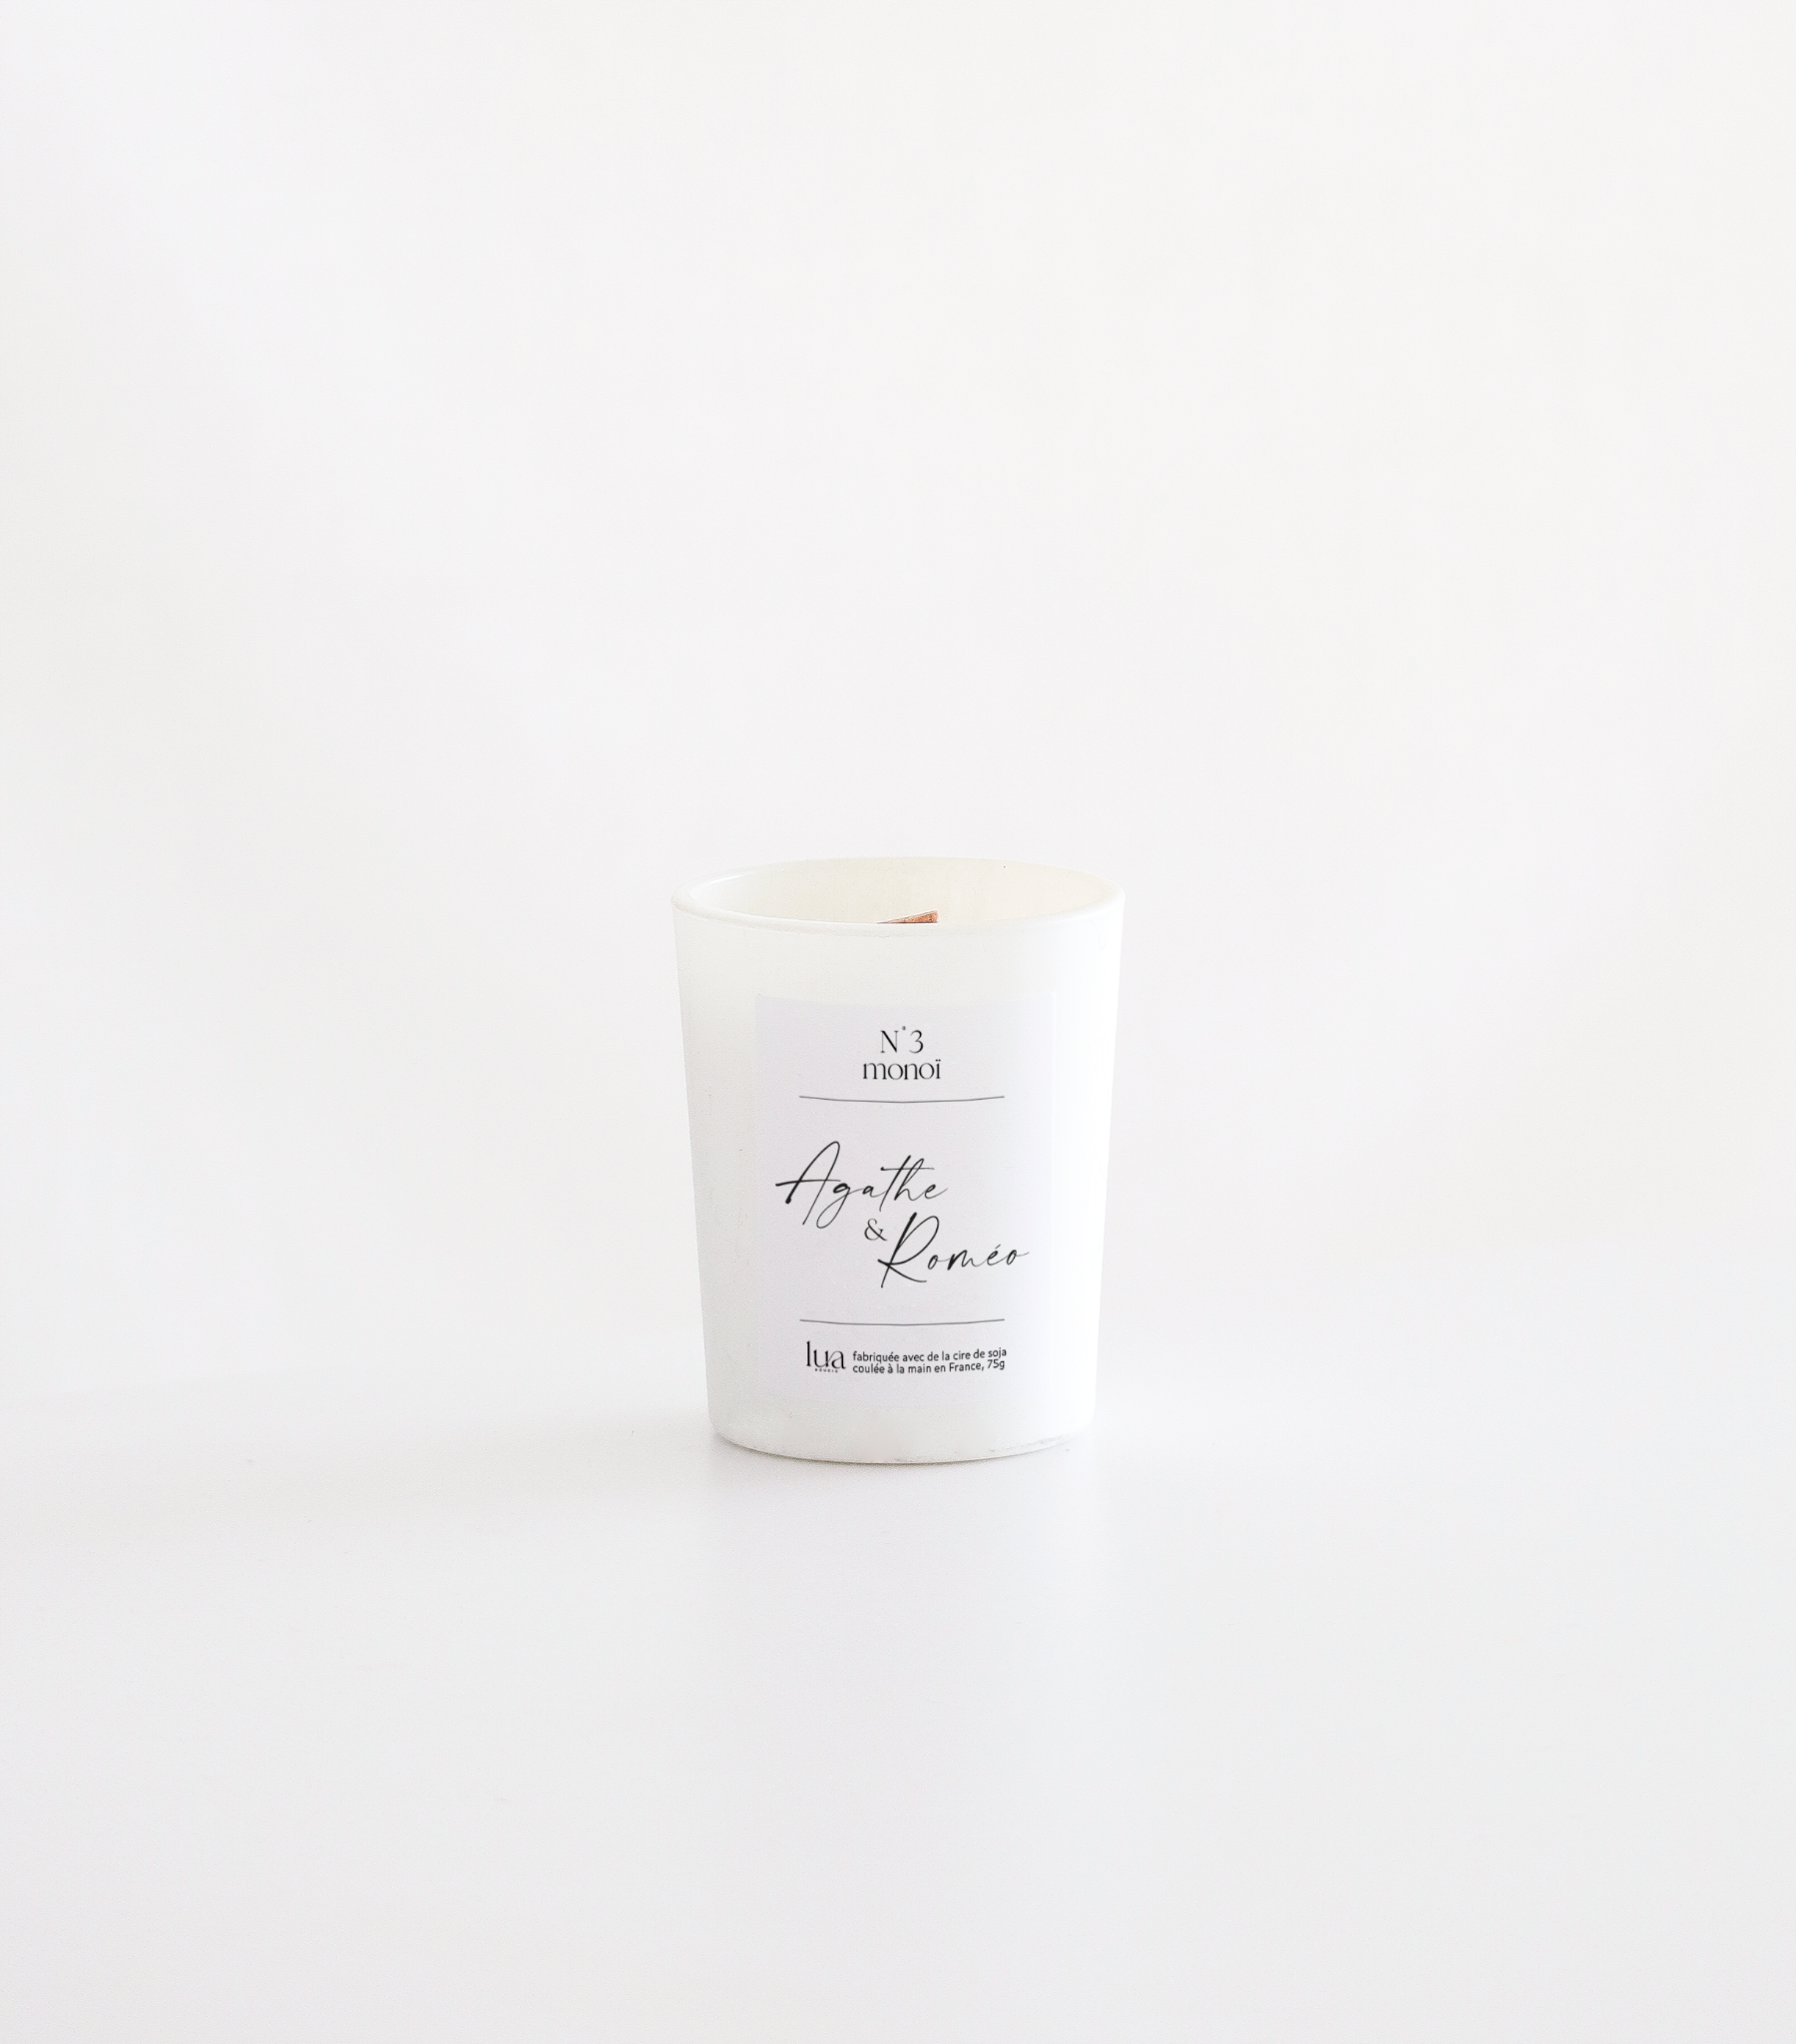 Bougie naturelle parfumée Lua, contenant blanc, parfum de Grasse. 